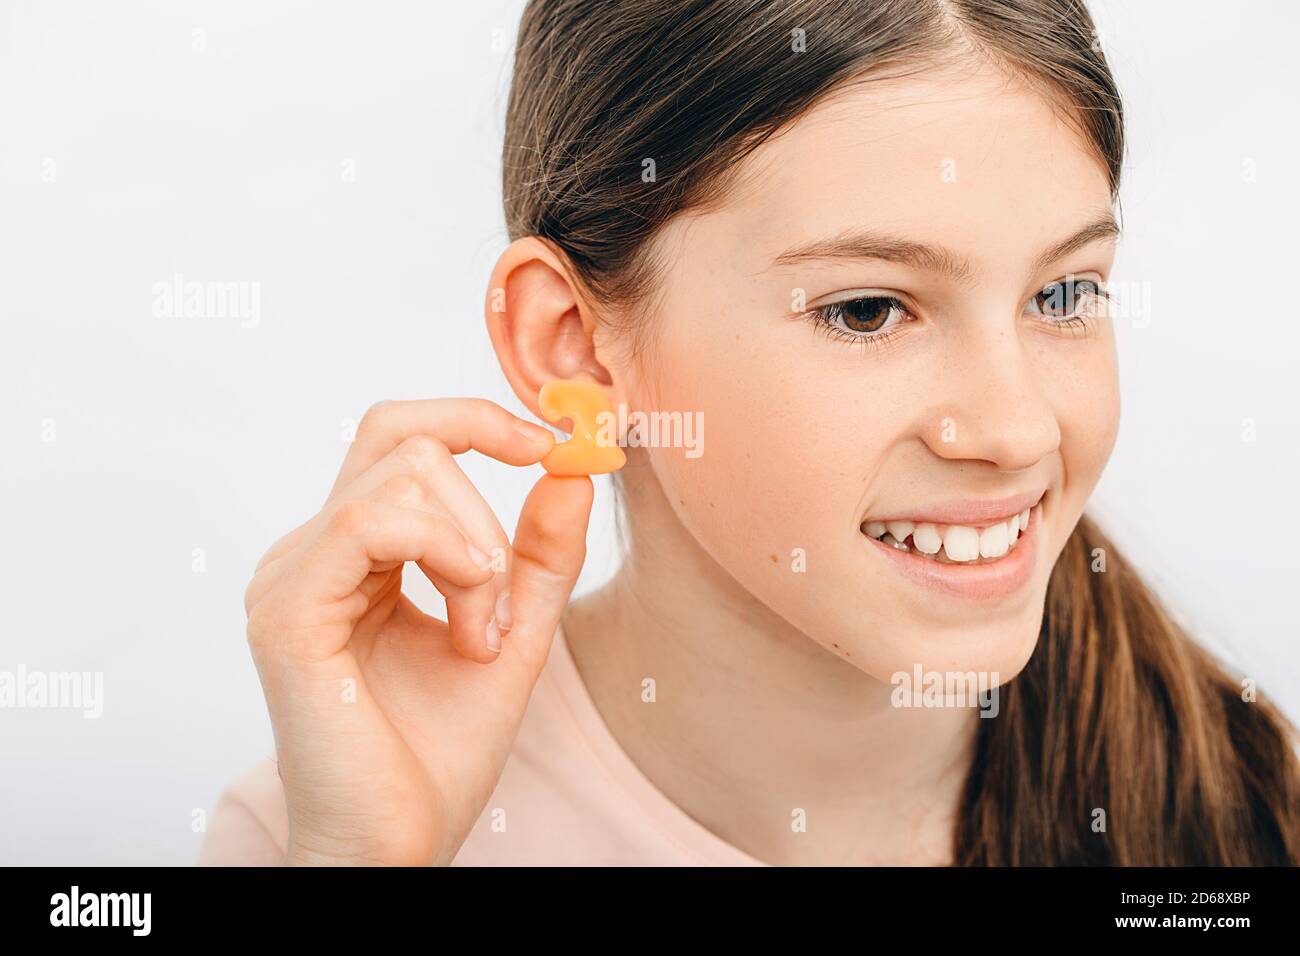 Tappi auricolari individuali per bambini. Ragazza che tiene il singolo auricolare vicino all'orecchio, primo piano. Foto Stock